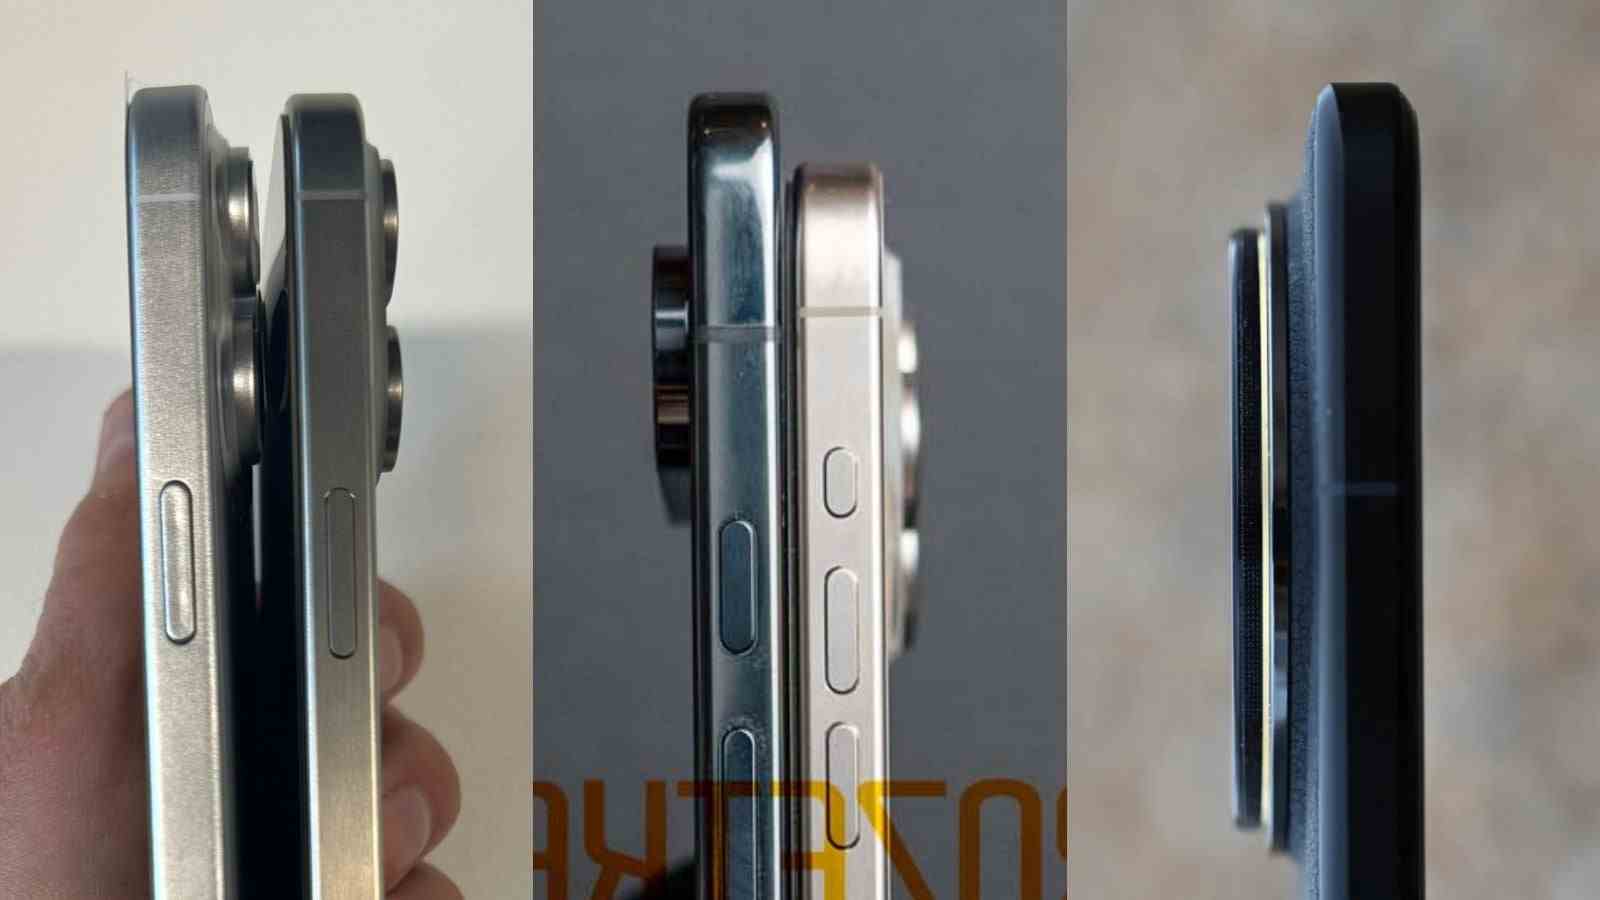 iPhone 16 Pro Max maket ünitesi, iPhone 15 Pro Max'in (solda), iPhone 15 Pro'nun (ortada) yanında Pixel 9 Pro, Xiaomi 14 Ultra'nın (sağda) yanında.  - Sızan iPhone 16 Pro, Pixel 9 Pro fotoğrafları Apple ve Google'ın Huawei'nin kamera teknolojisine ihtiyacı olduğunu gösteriyor